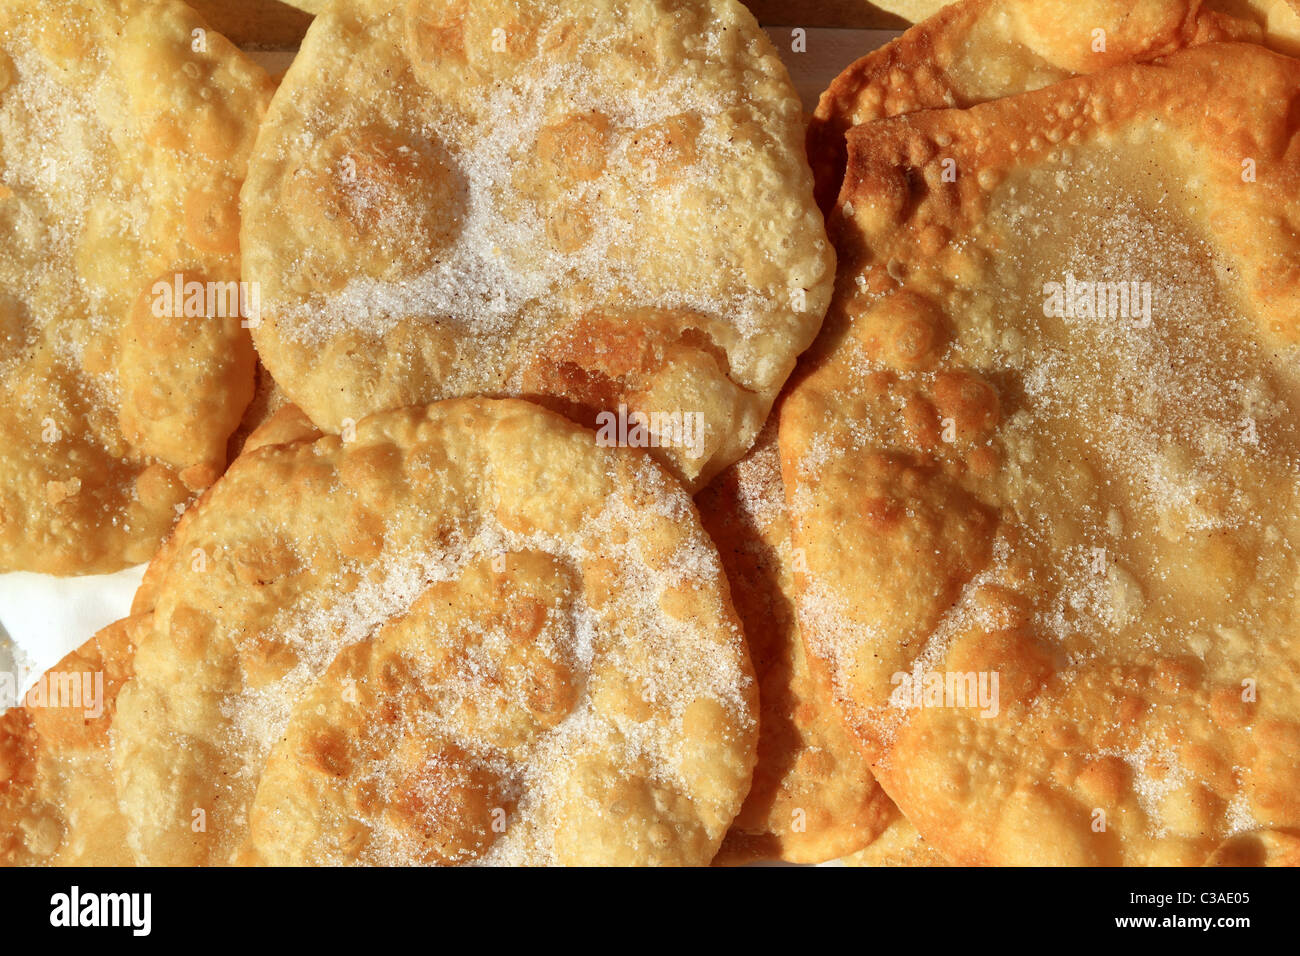 Frita Redonda azúcar harina de trigo tostadas postre mediterráneo Foto de stock